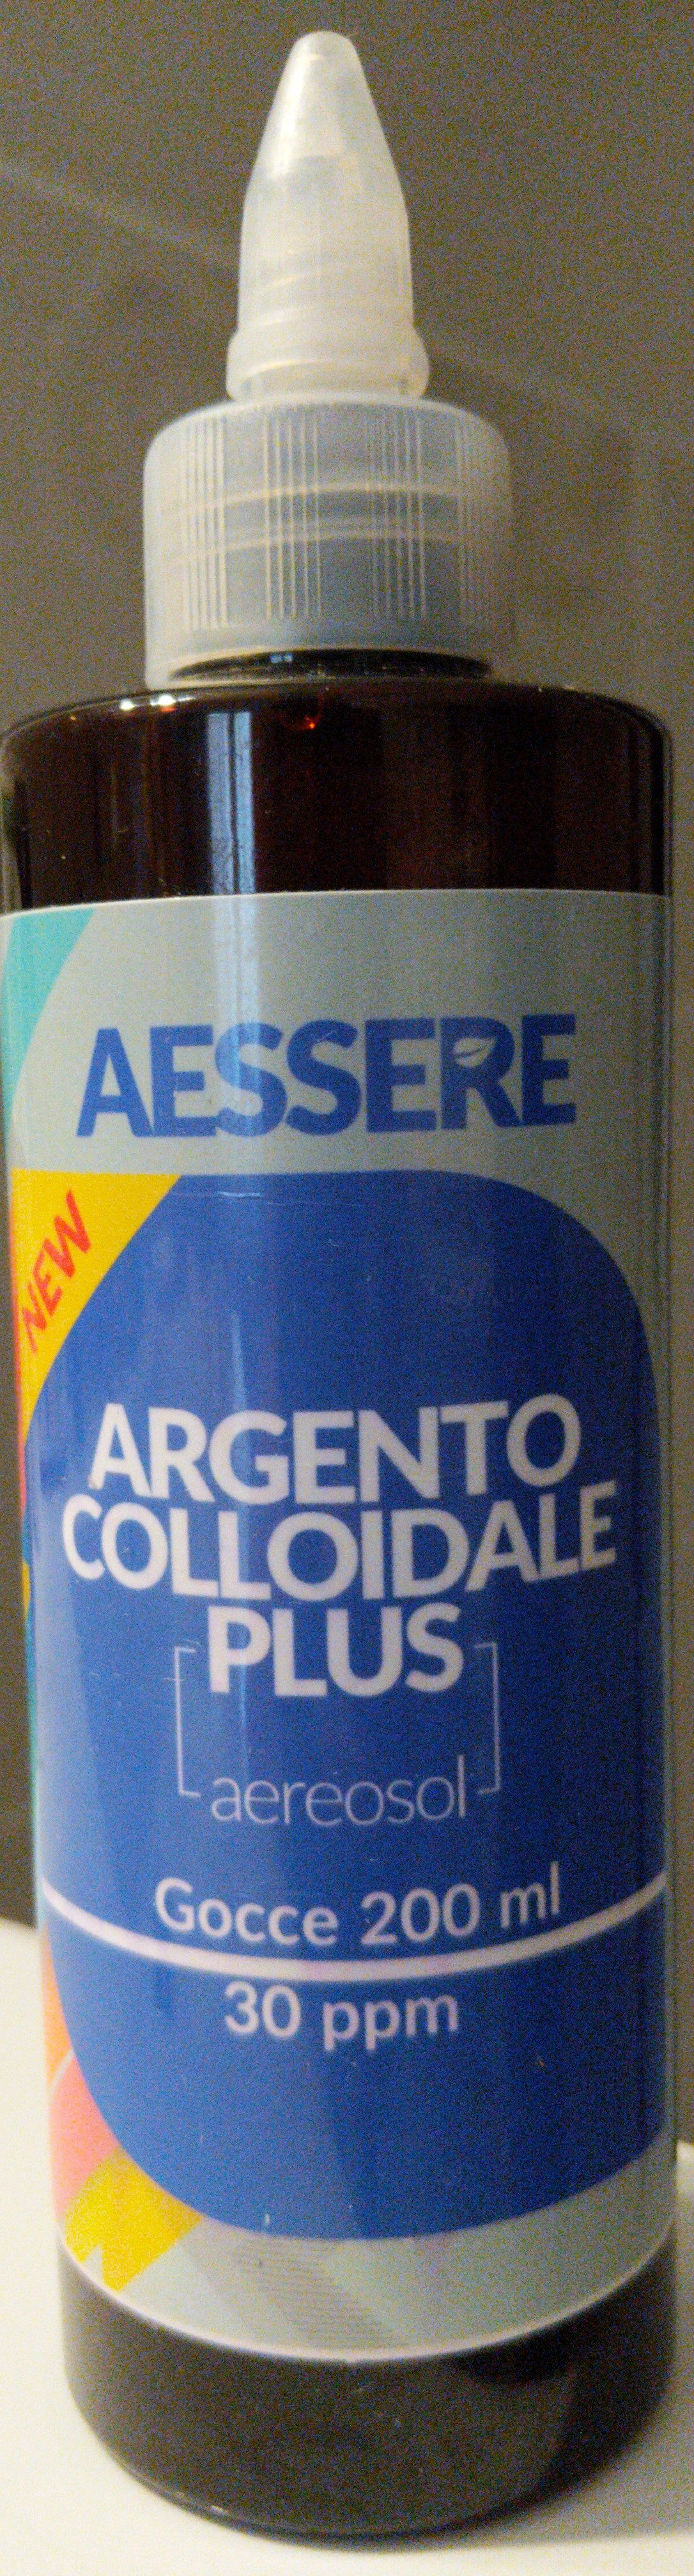 Argento Colloidale Plus aerosol - Продукт - it